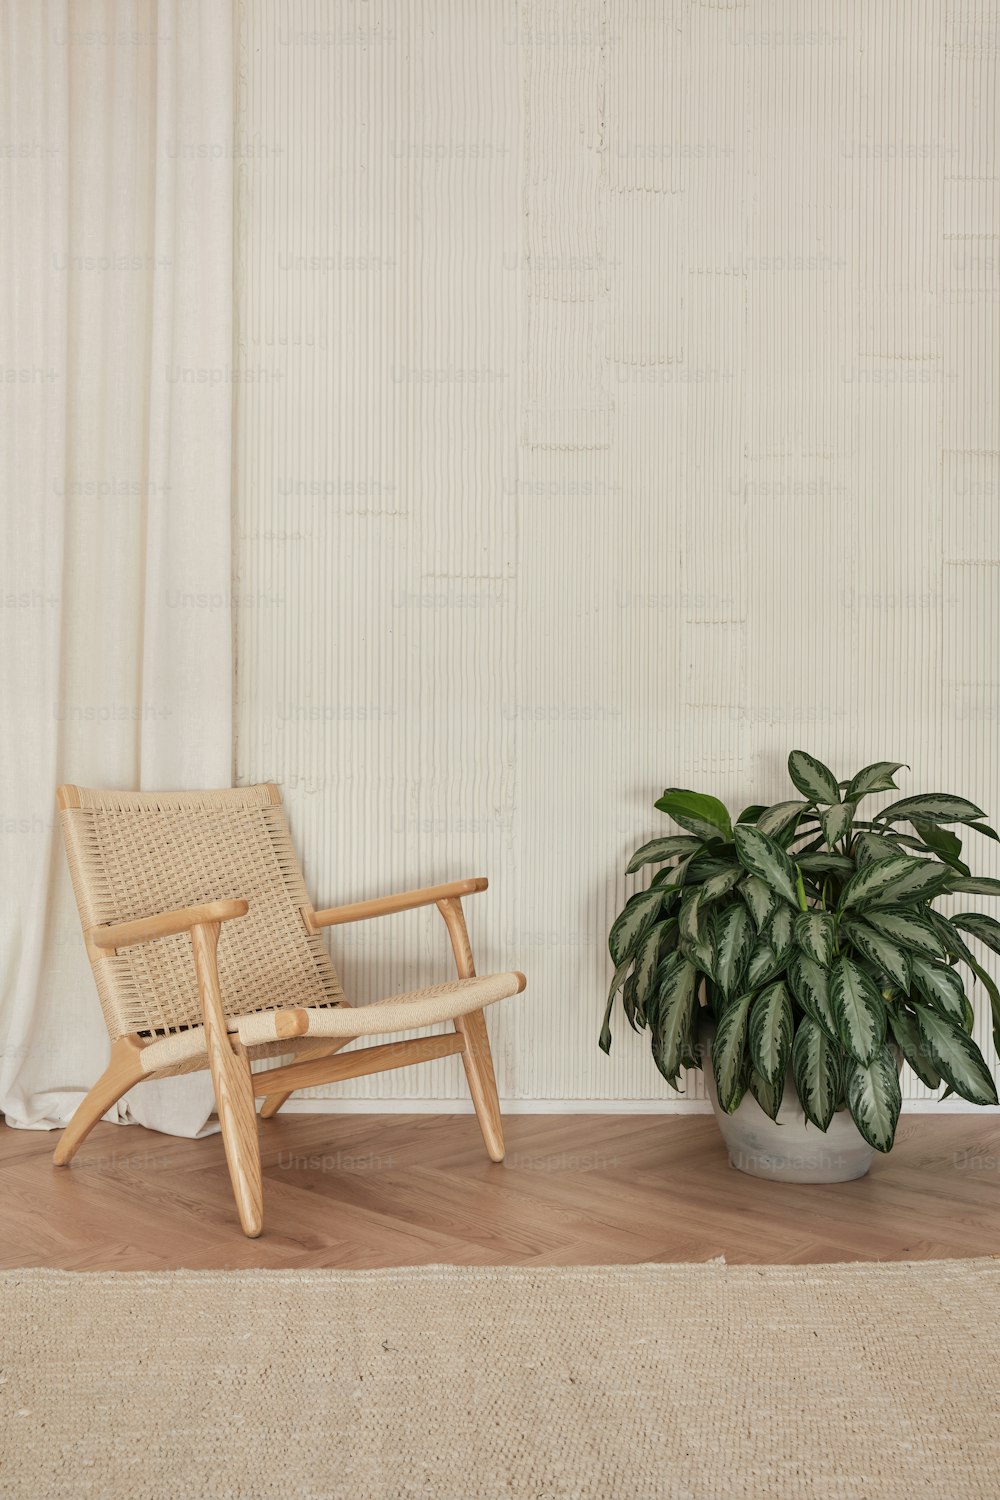 ein Stuhl neben einer Topfpflanze auf einem Holzboden